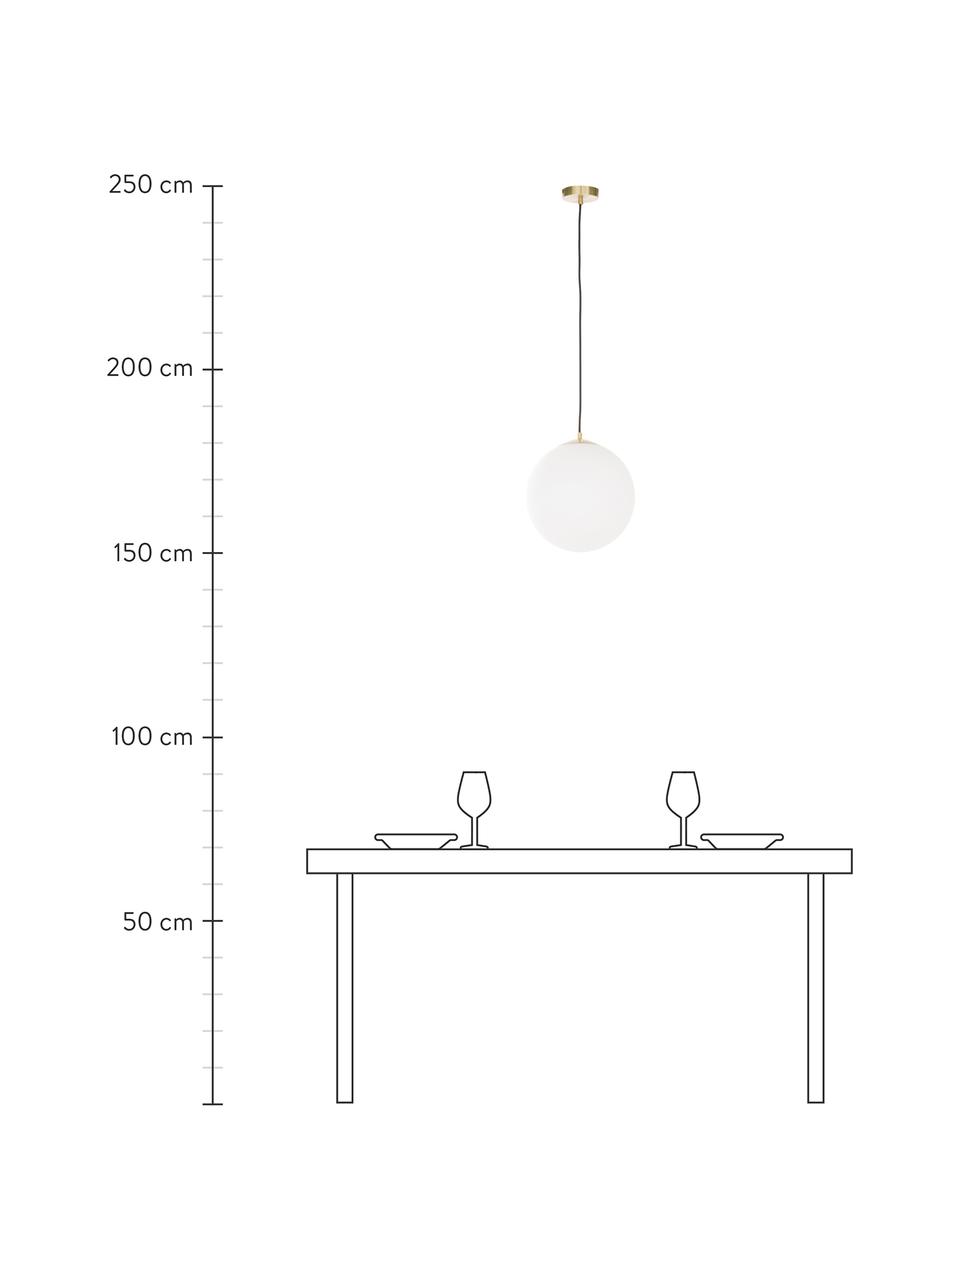 Hanglamp met bollen Beth van opaalglas, Lampenkap: opaalglas, Baldakijn: vermessingd metaal, Decoratie: vermessingd metaal, Wit, messingkleurig, Ø 20 cm